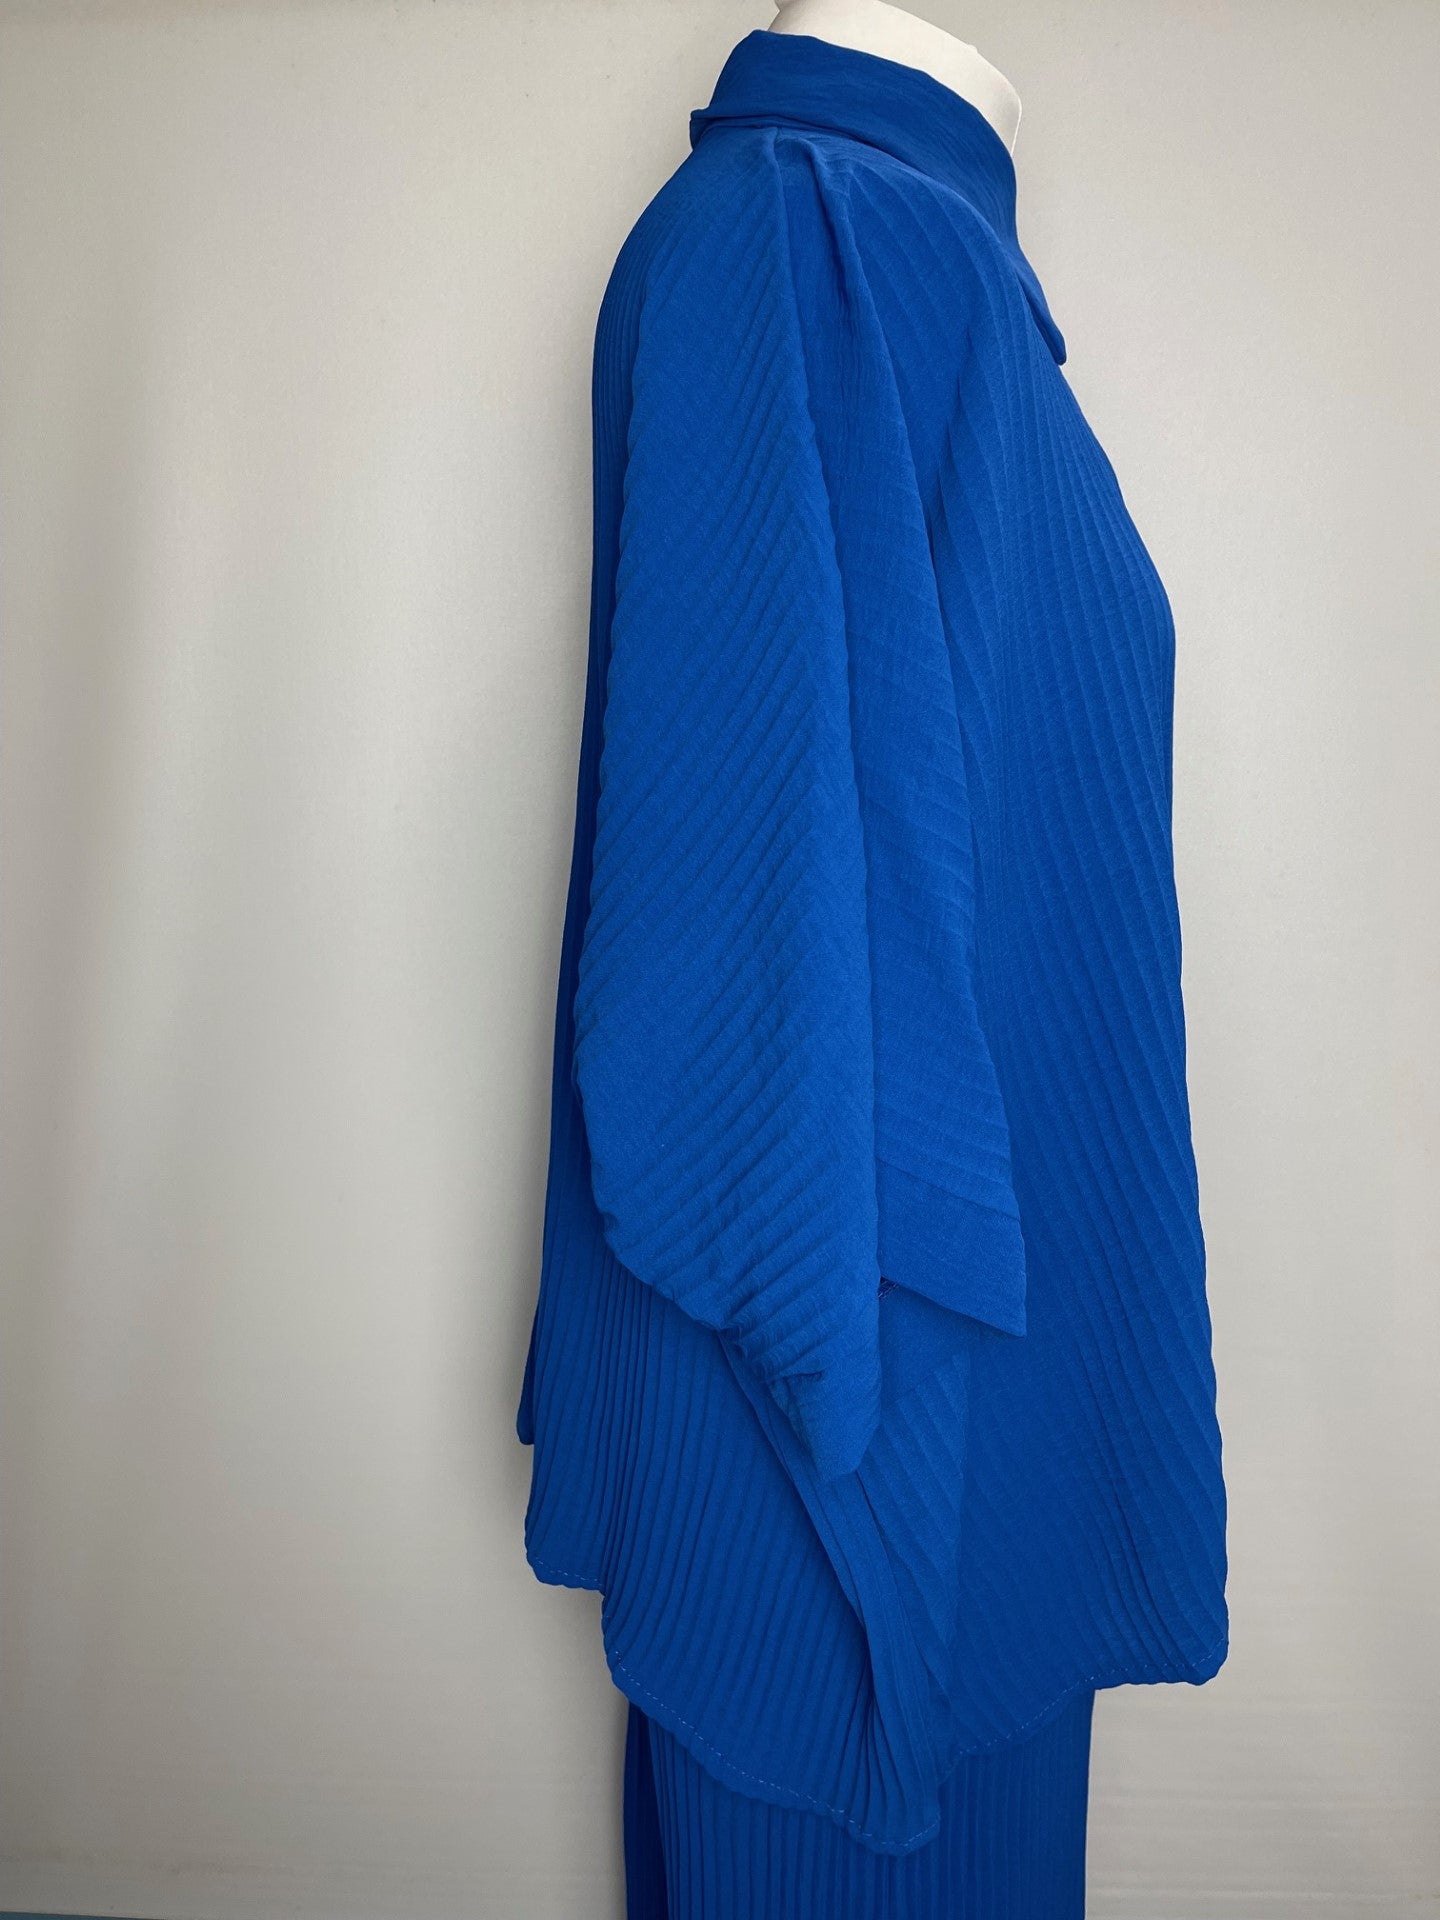 BNWT Italian Blue Loungewear Set Large